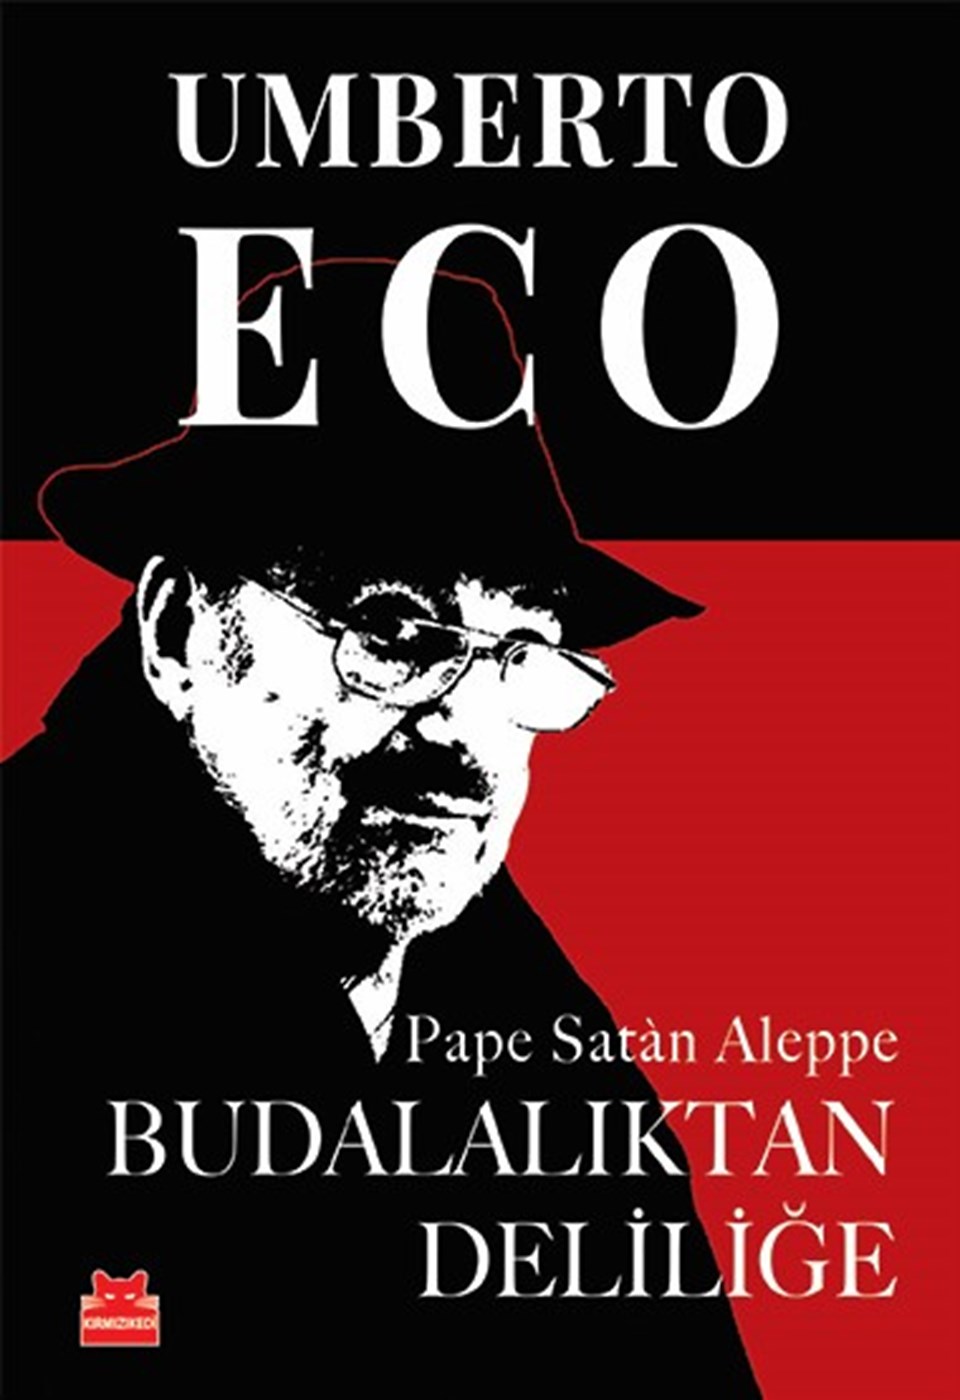 Umberto Eco’nun son sözleri Türk okurlarla buluştu - 1